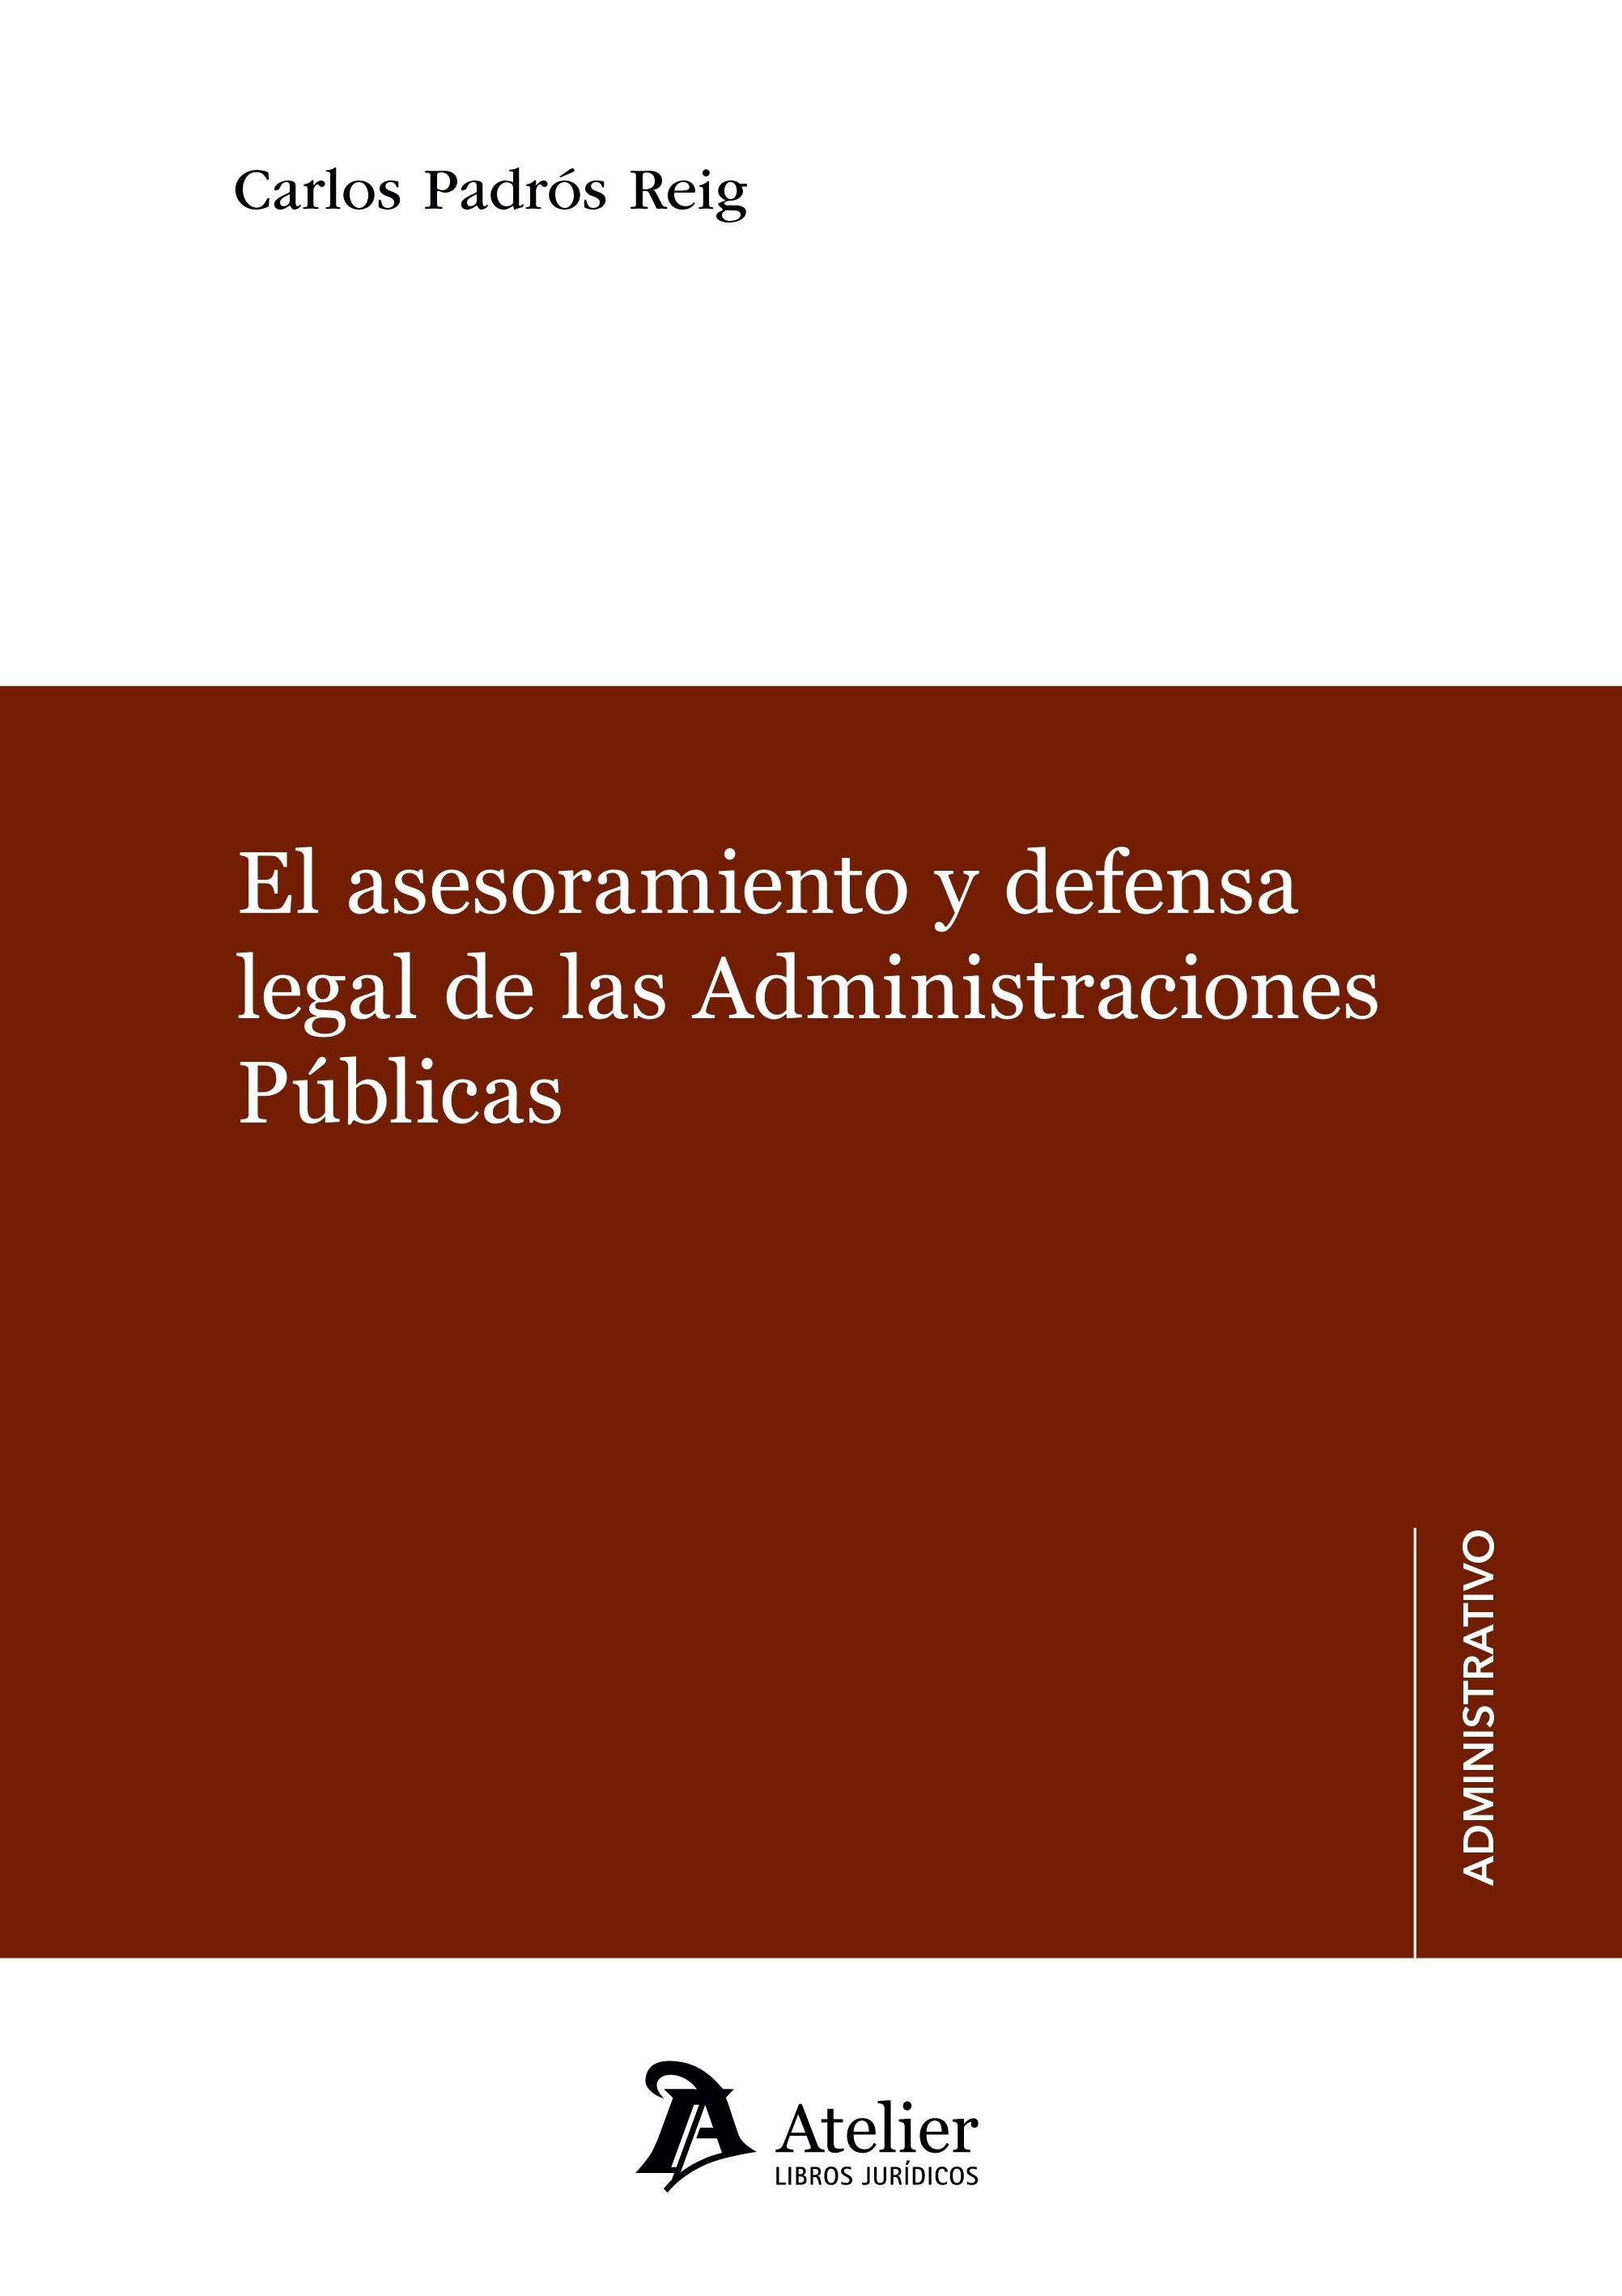 Asesoramiento y defensa legal de las administraciones públicas, El